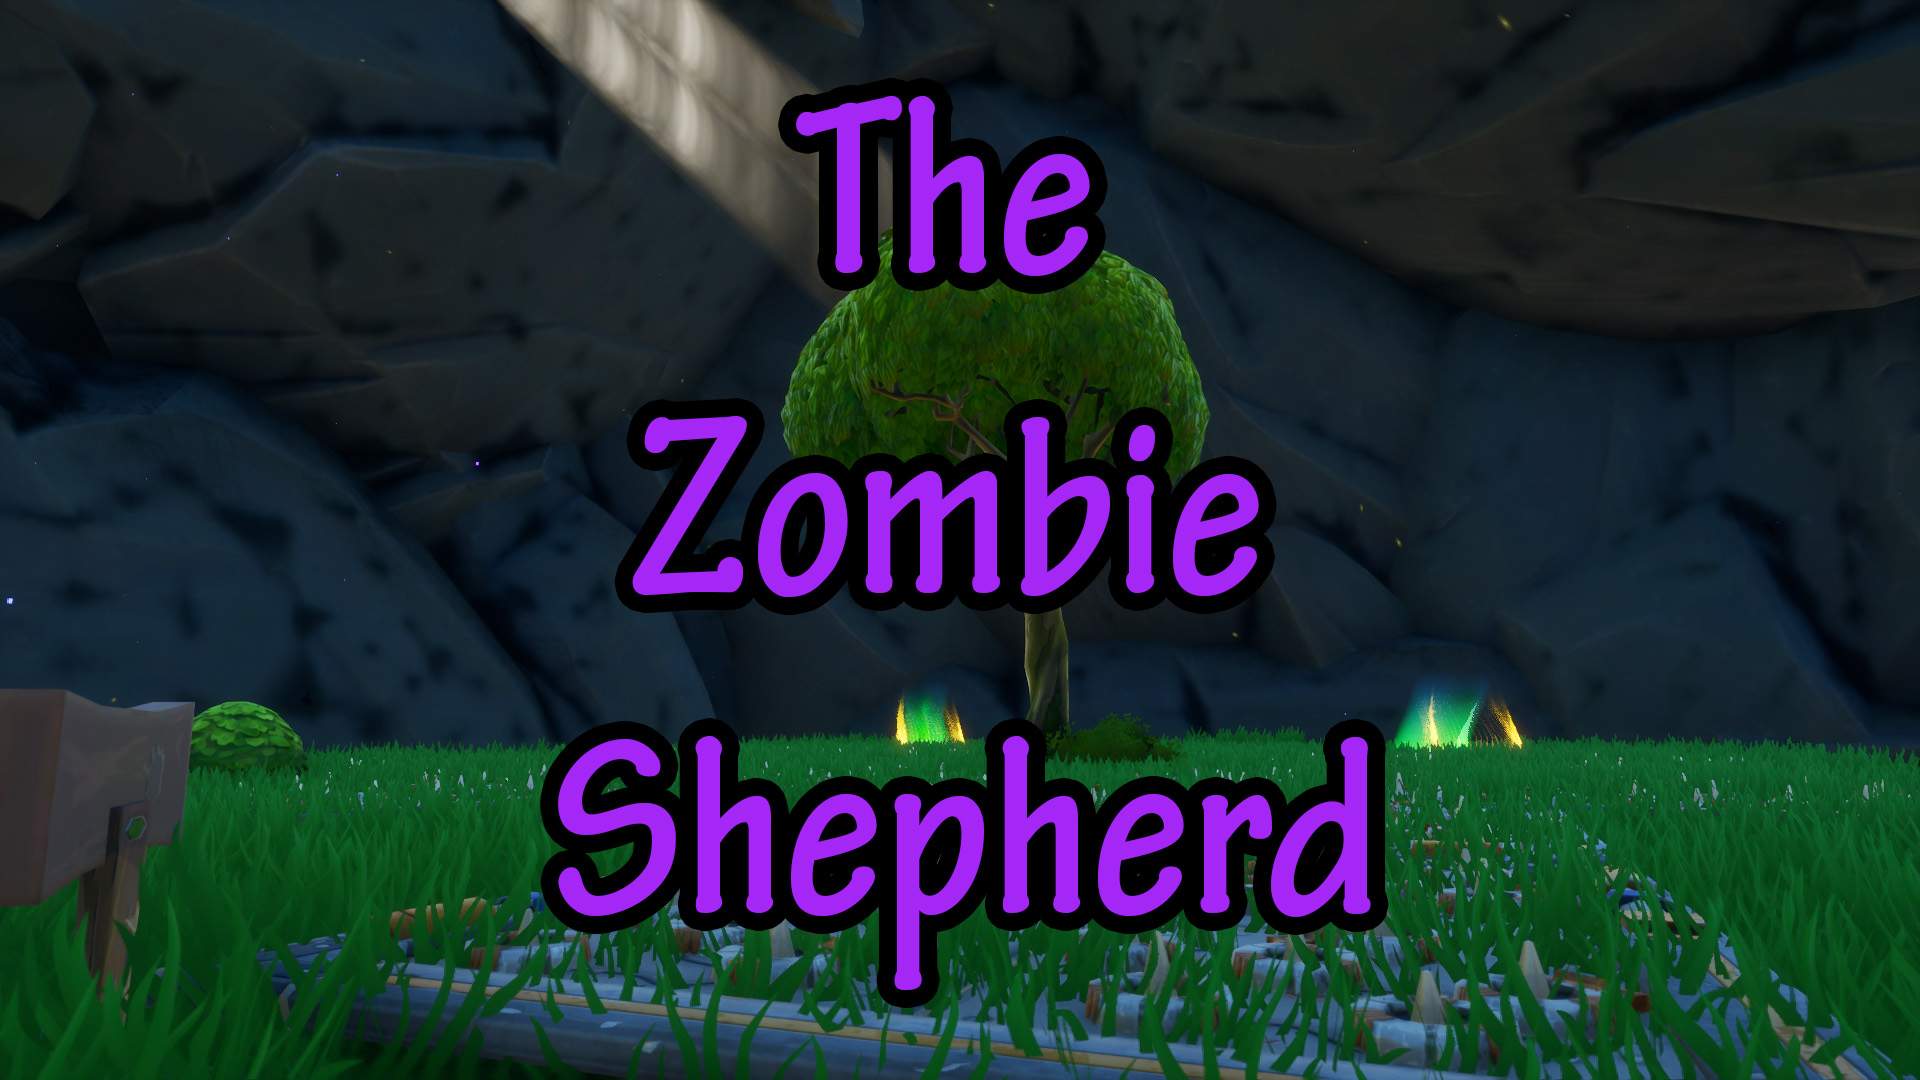 THE ZOMBIE SHEPHERD